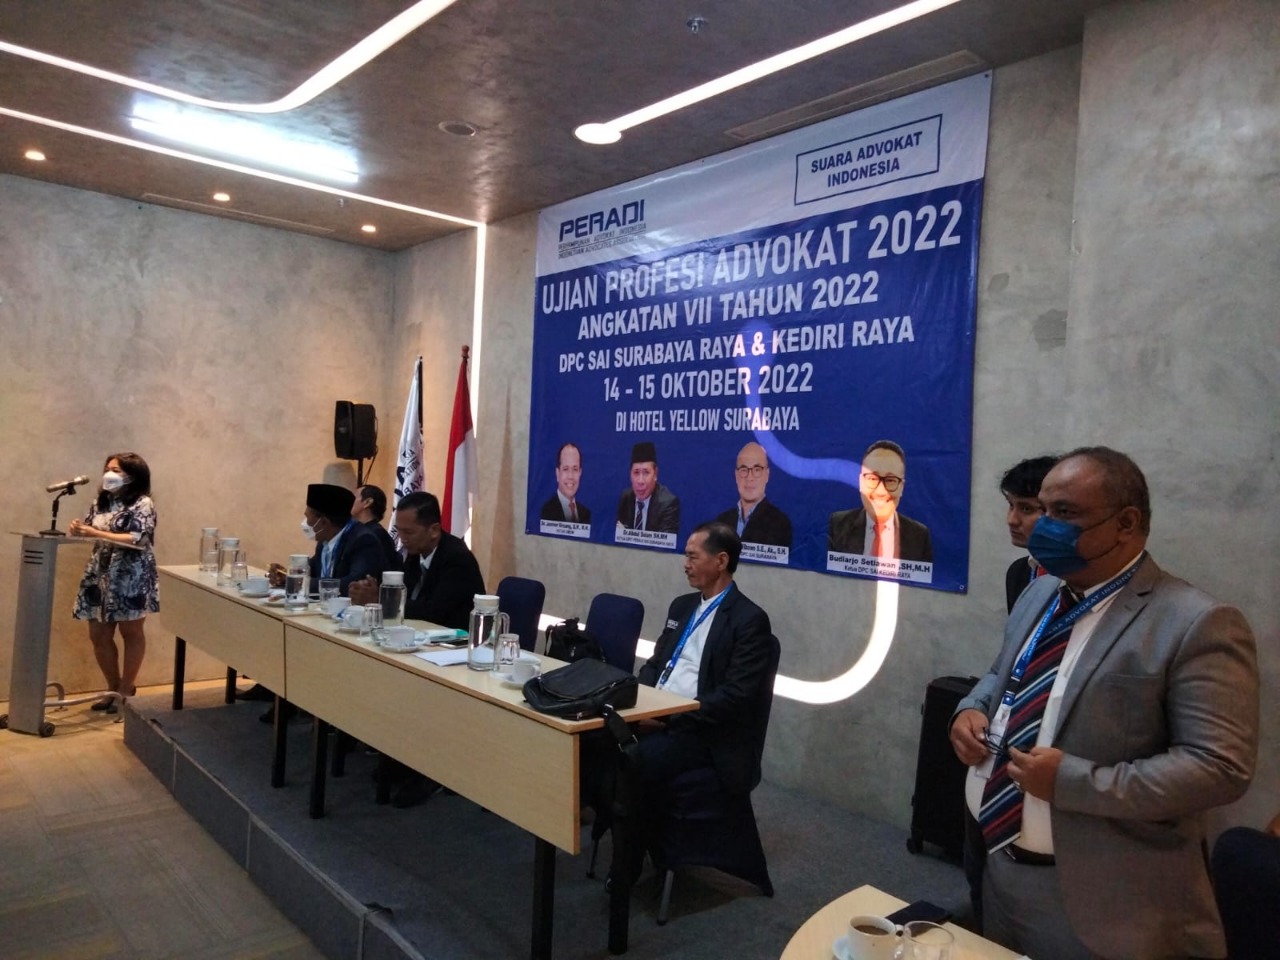 UPA DPC Surabaya & Kediri Raya Angkatan VII Tahun 2022 - 14-15 Oktober 2022